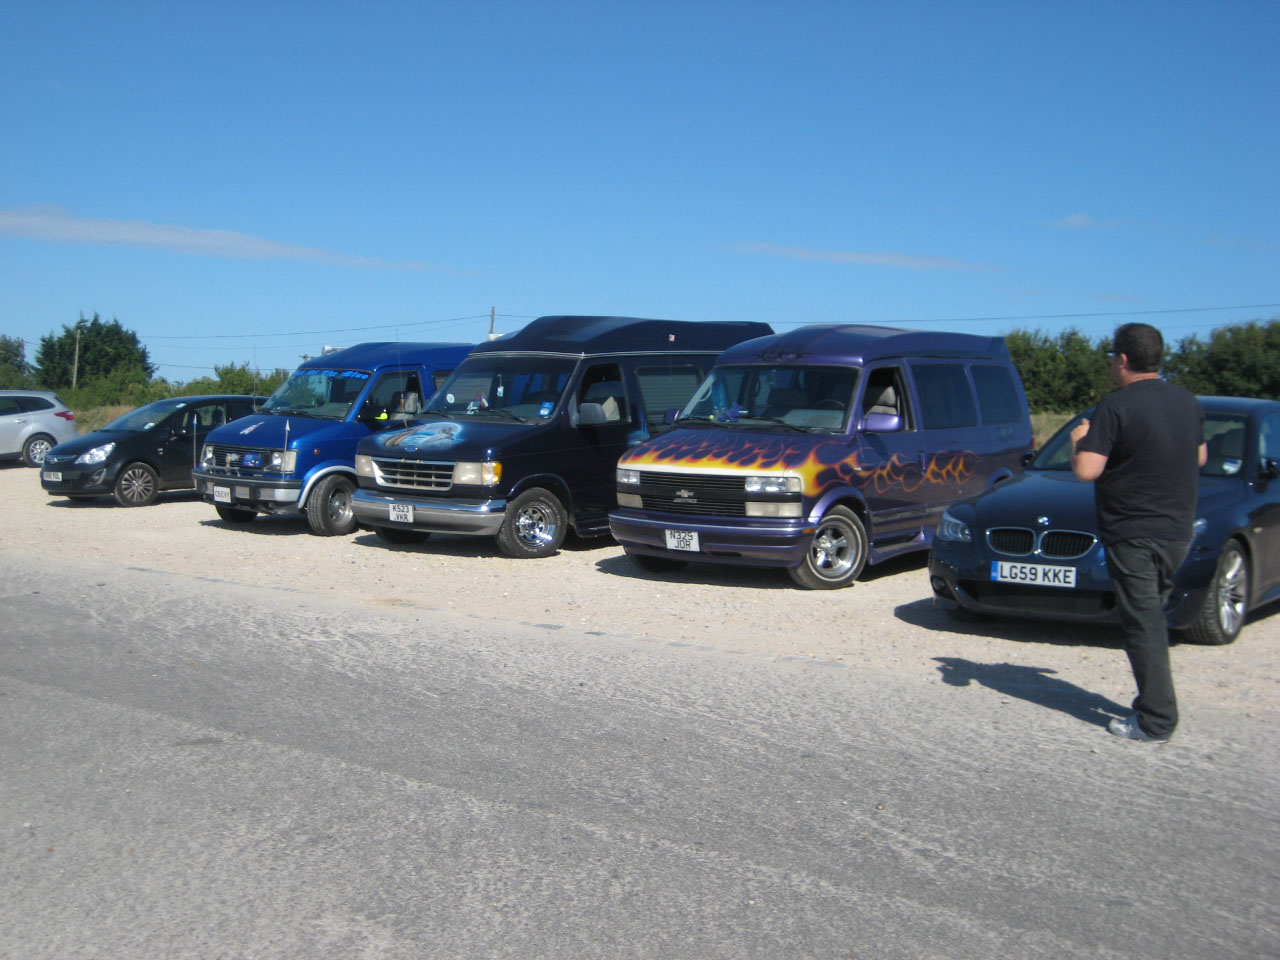 Line up of vans